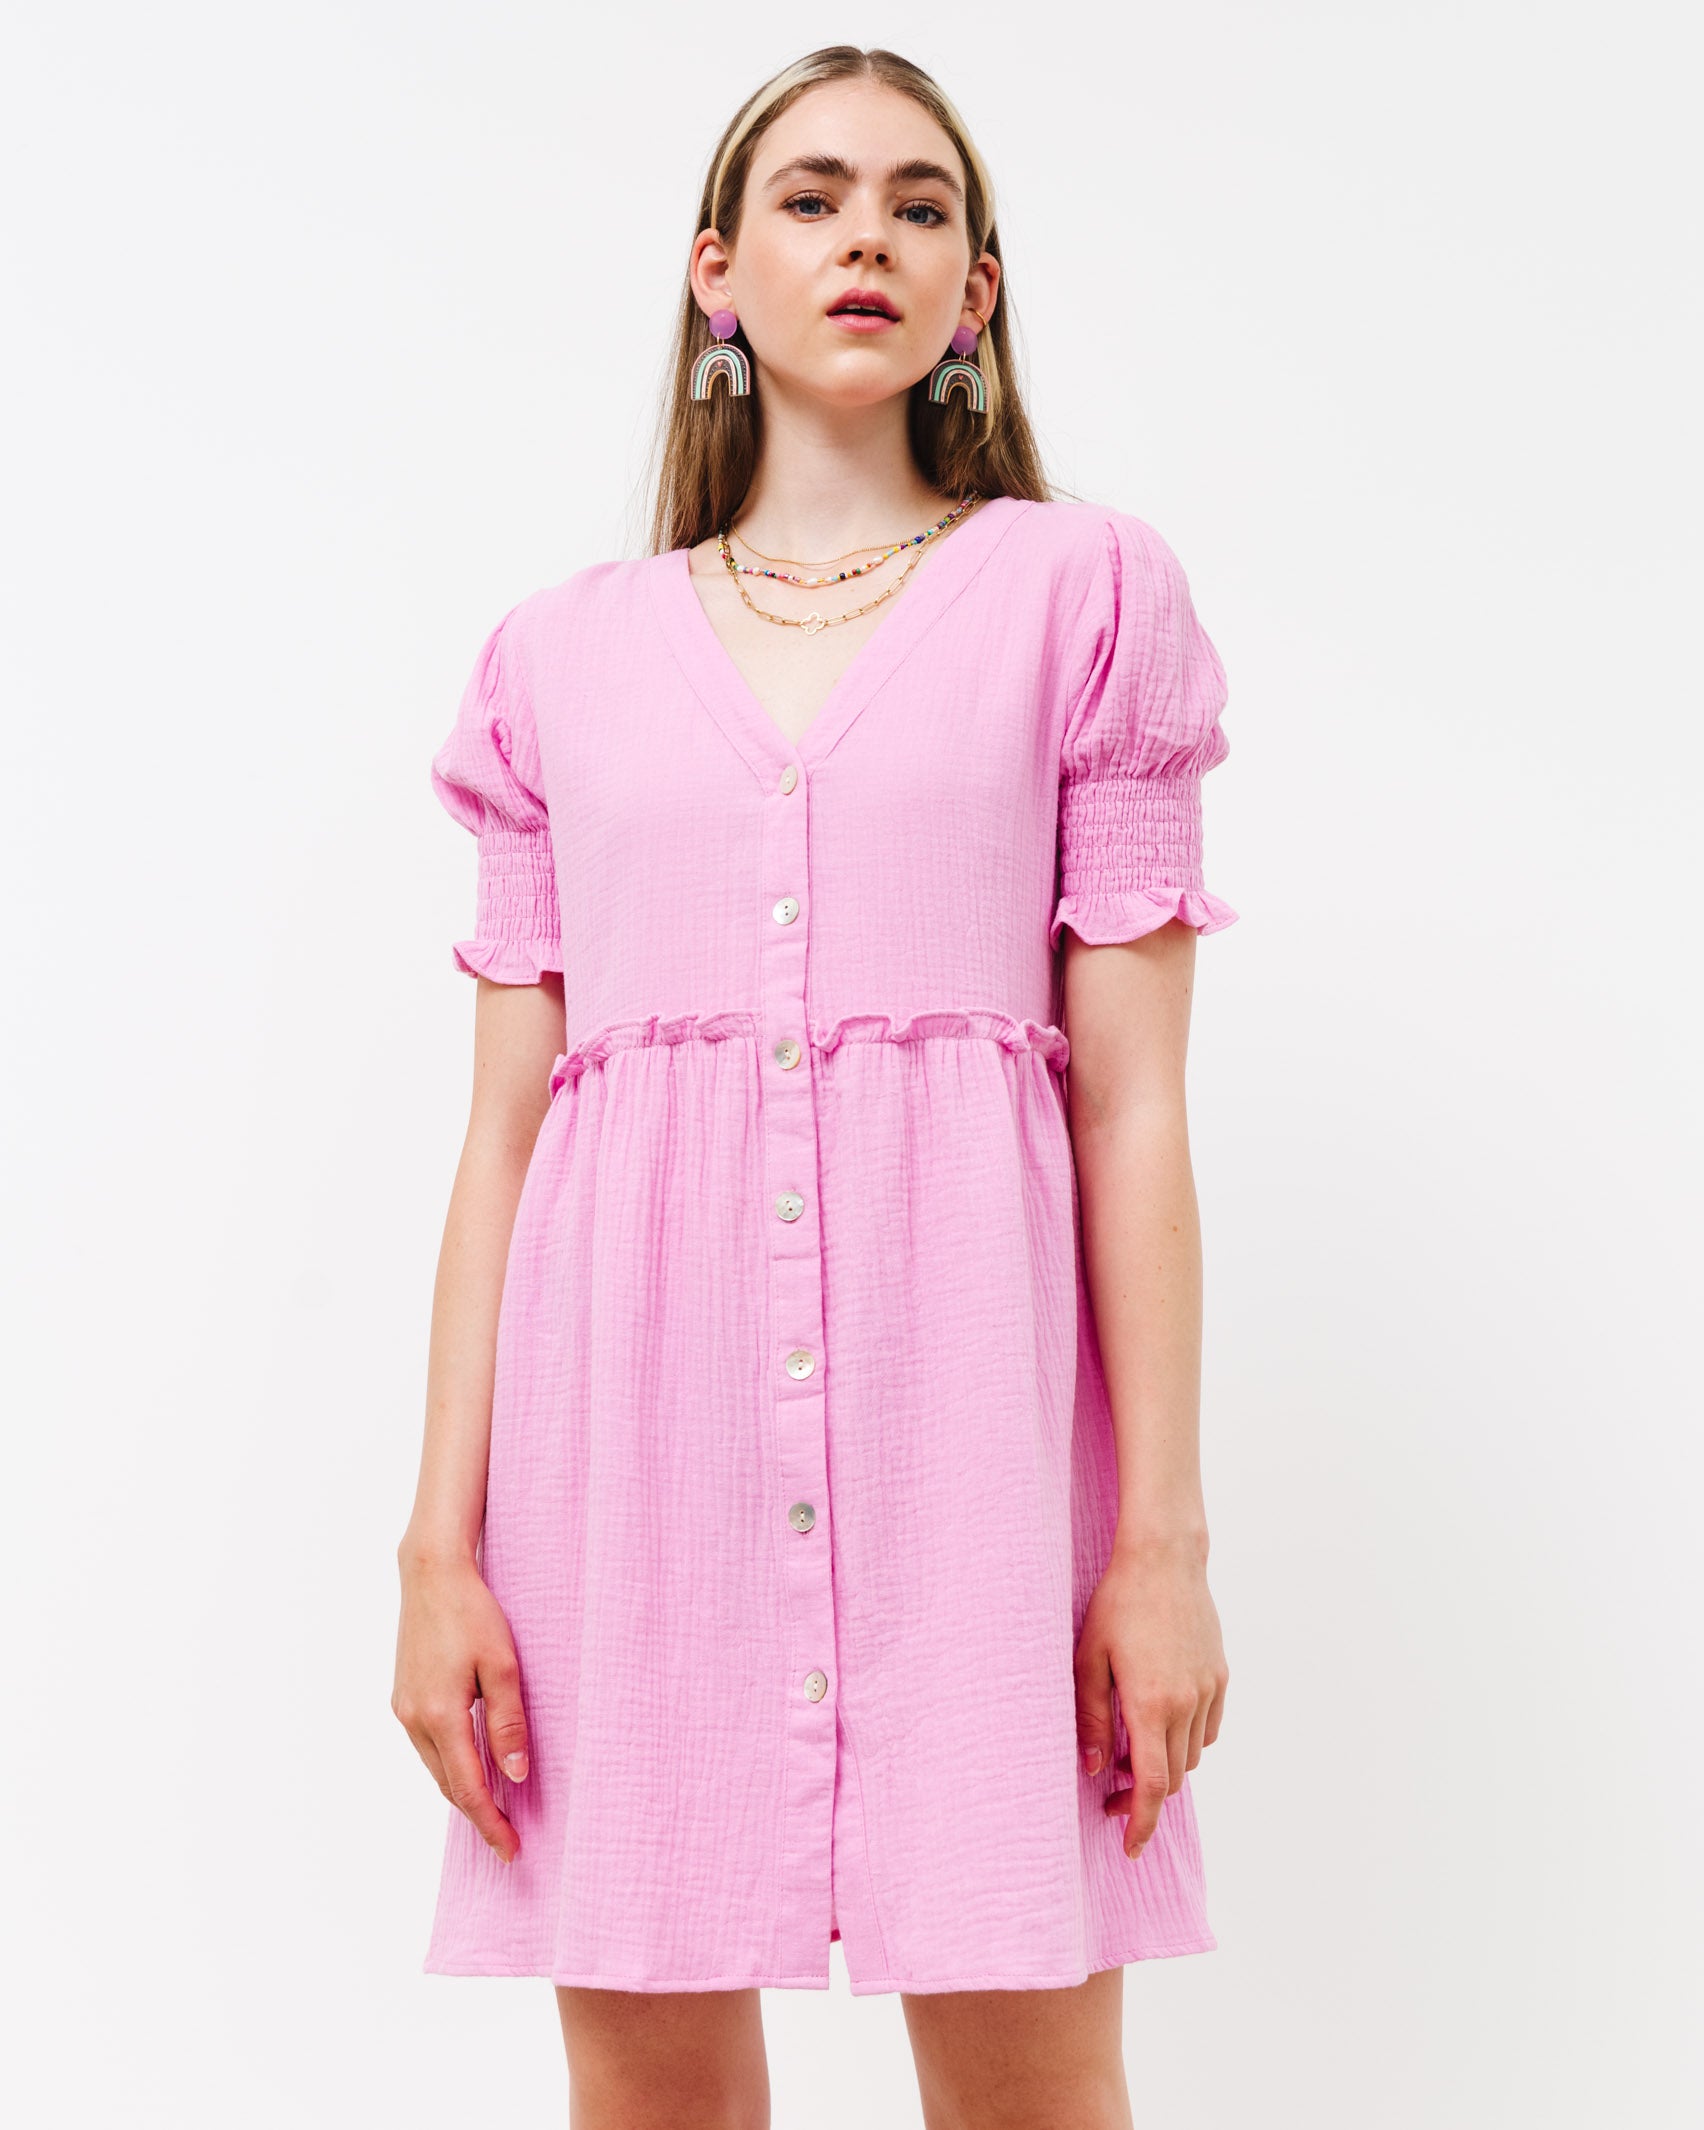 Verspieltes Musselin Kleid - Broke + Schön#farbe_bright-pink